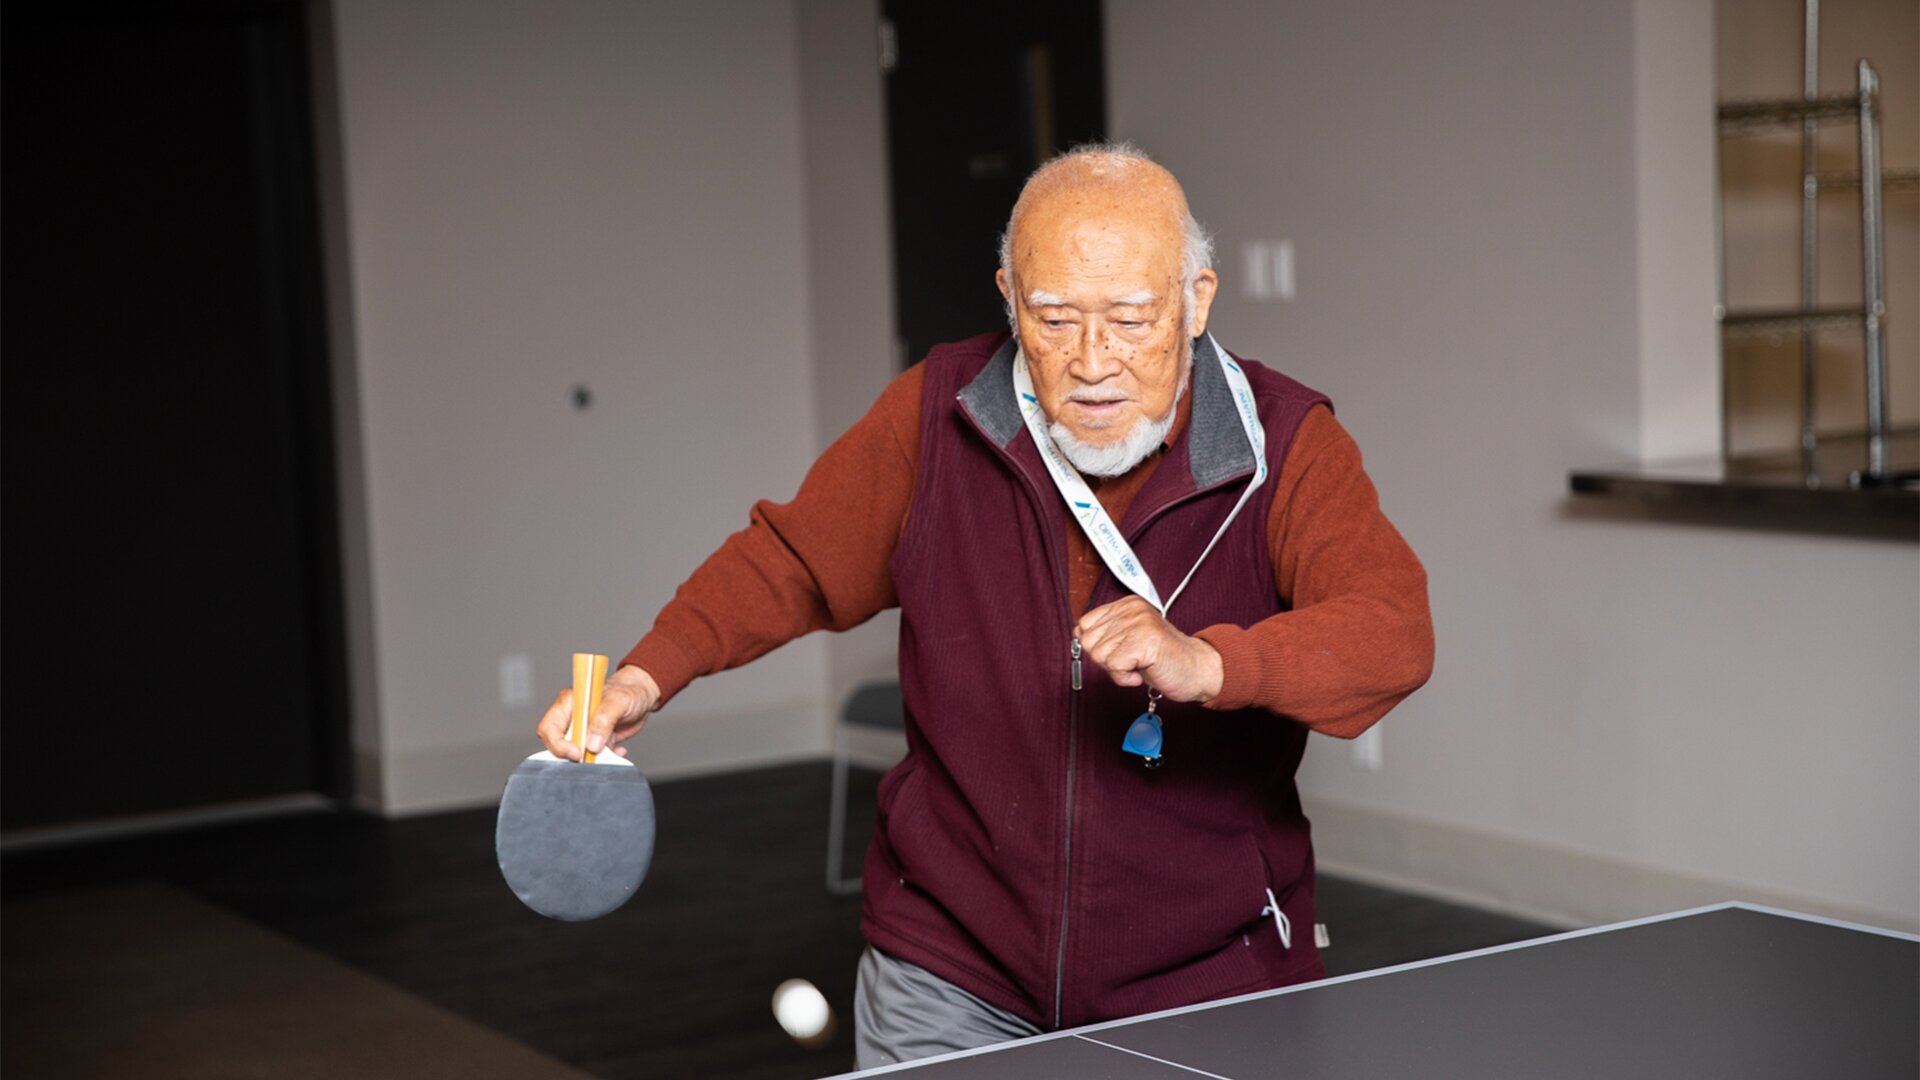 An elderly man playing ping pong